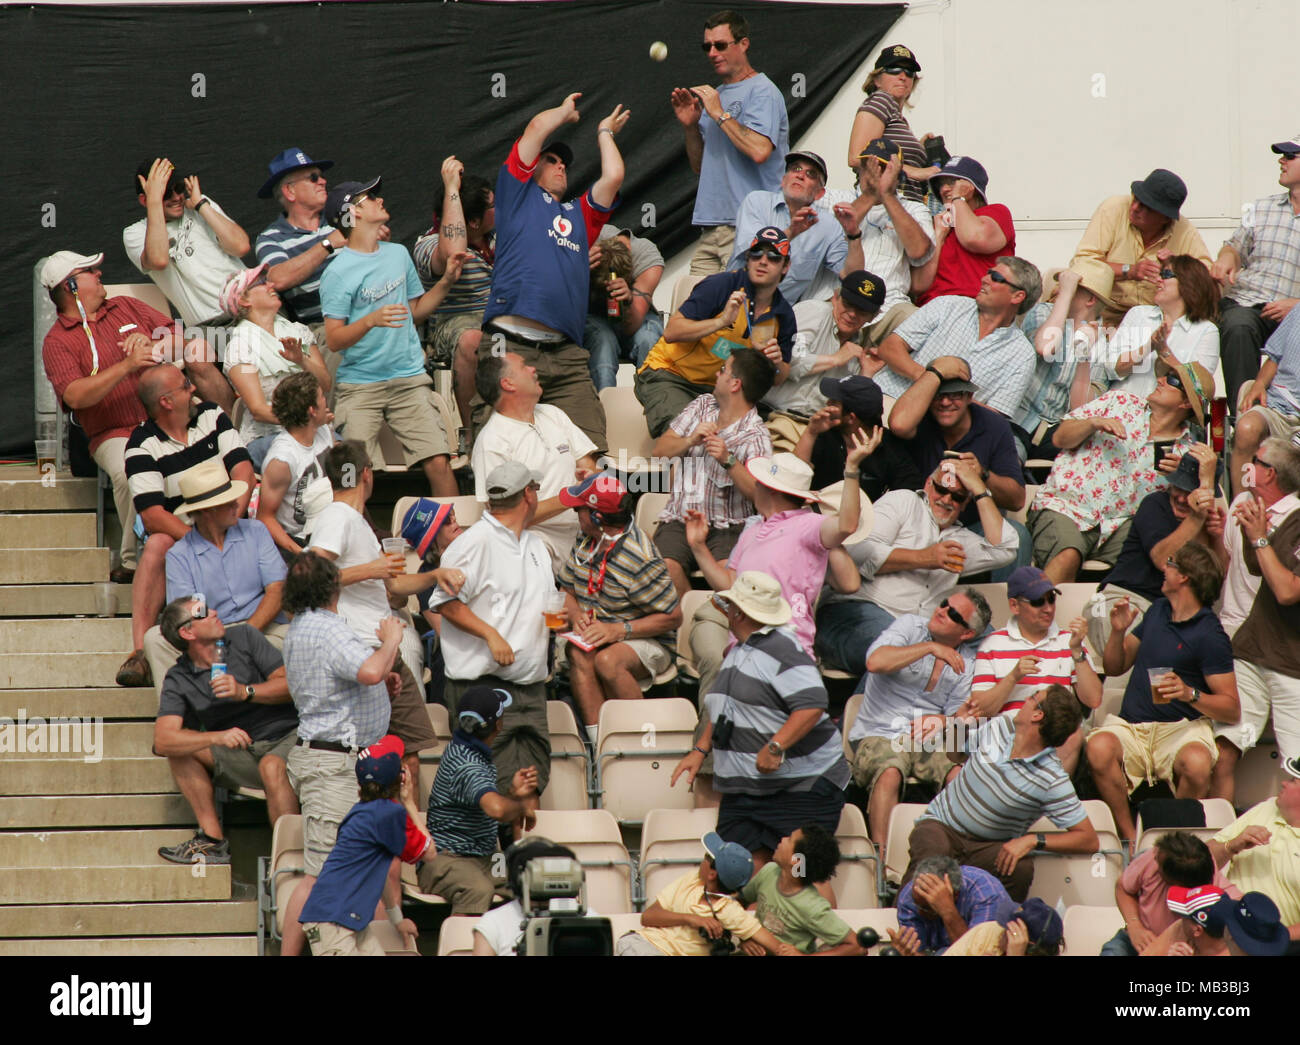 Eine Grille Kugel geht in die Menge während eines Cricket Match und es wird versucht, durch einen Ventilator, während andere Fans Ente erwischt zu werden und Dodge den ankommenden Ball. Stockfoto